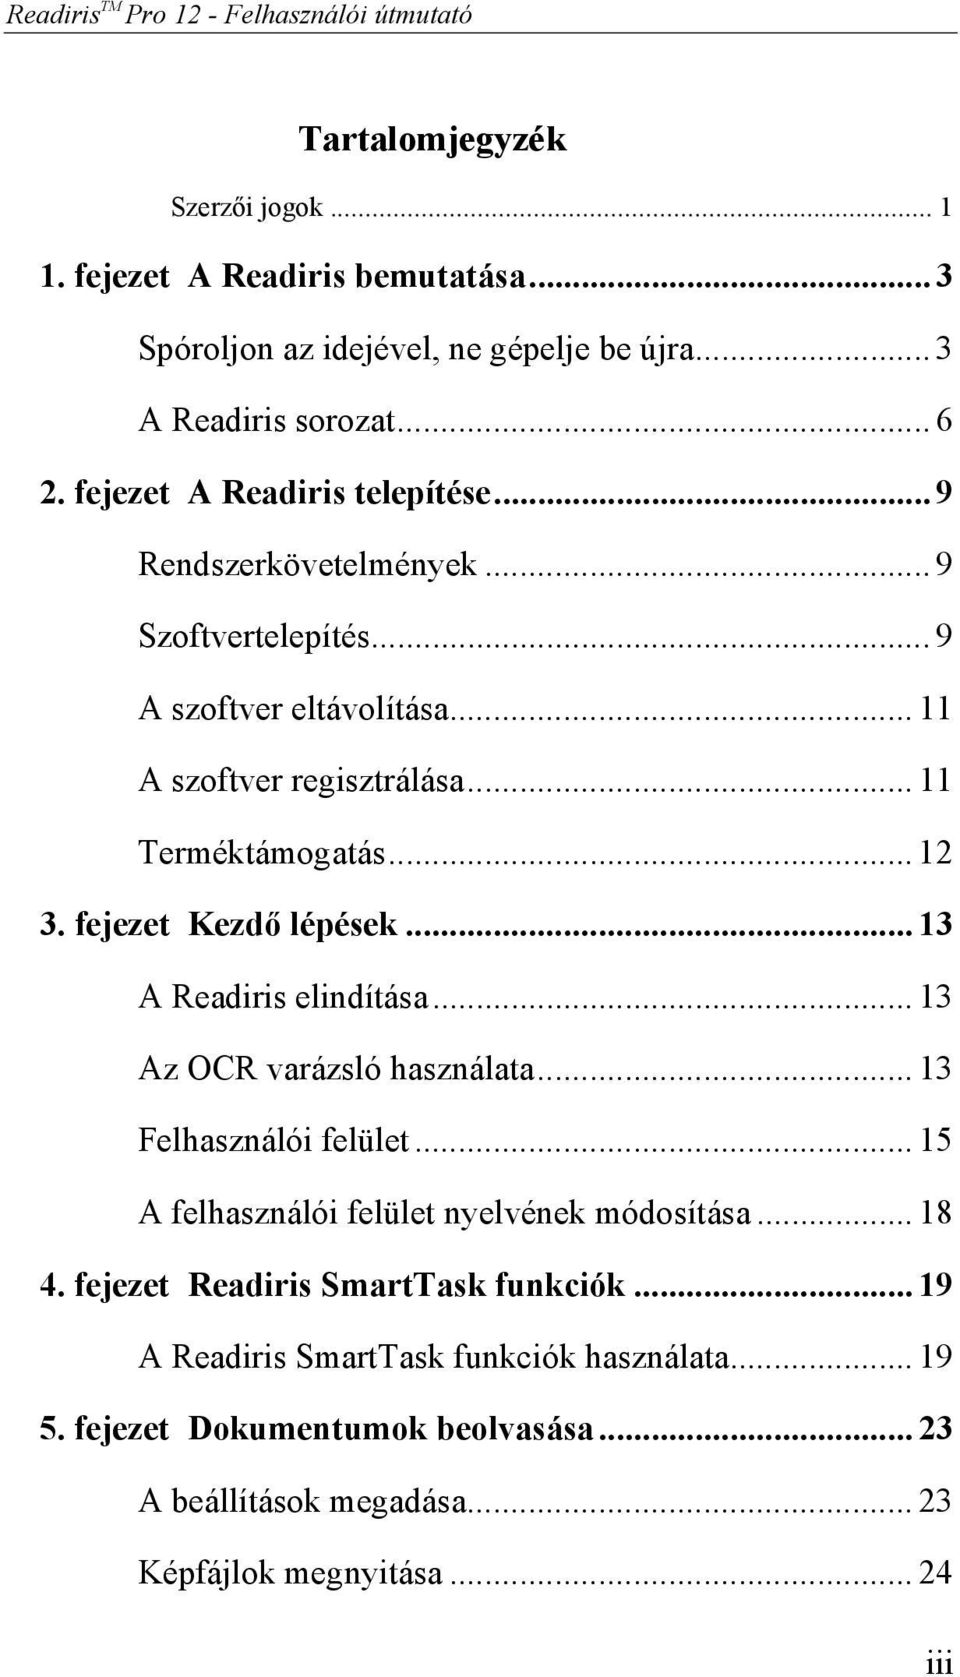 Readiris TM Pro 12. Felhasználói útmutató - PDF Ingyenes letöltés